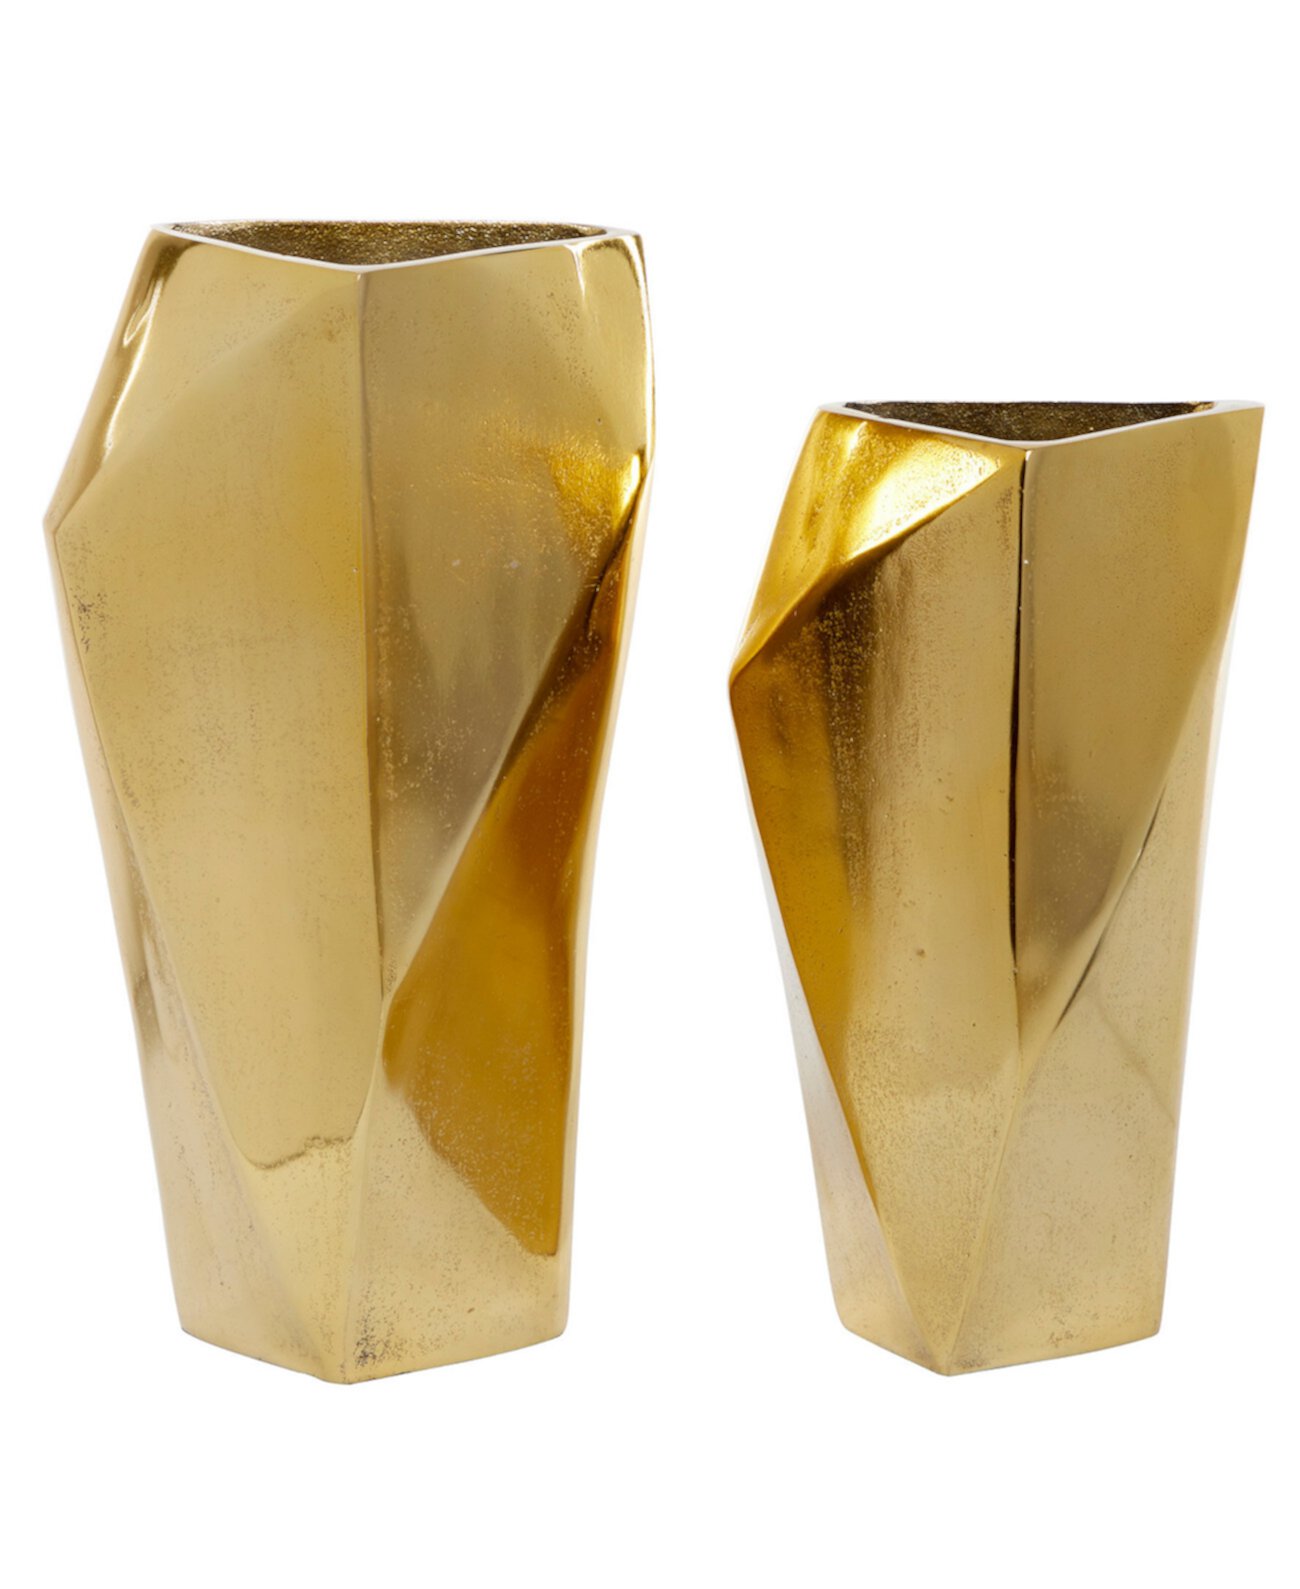 Коллекционный набор из 2 серебряных алюминиевых современных ваз, 14 ", 12" Venus Williams